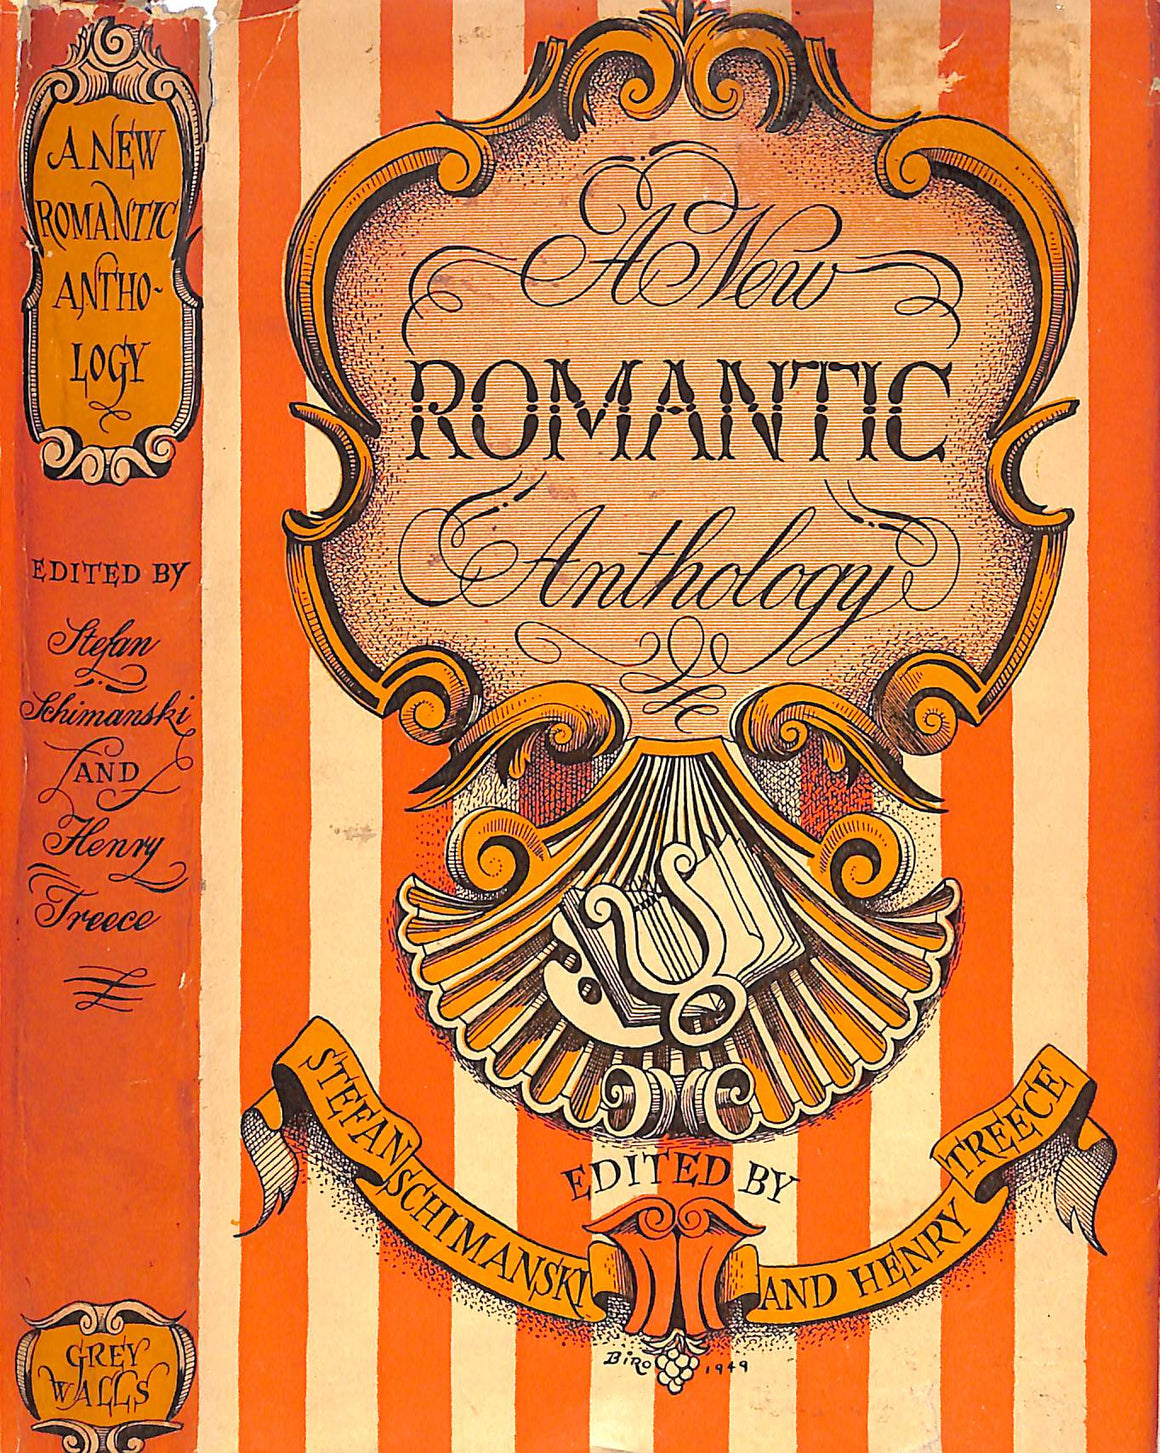 "A New Romantic Anthology" 1949 SCHIMANSKI, Stefan, TREECE, Henry